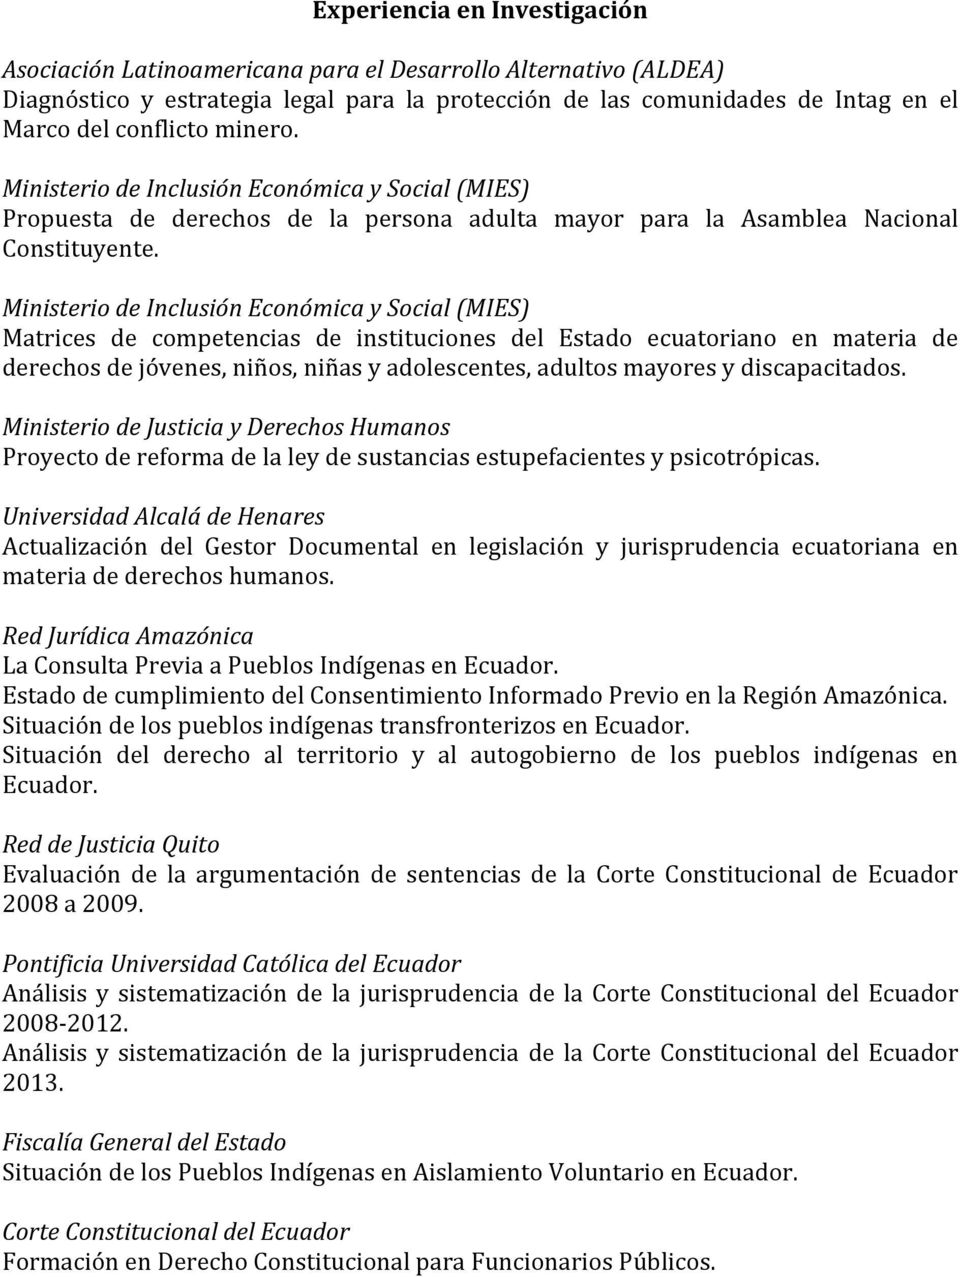 Ministerio de Inclusión Económica y Social (MIES) Matrices de competencias de instituciones del Estado ecuatoriano en materia de derechos de jóvenes, niños, niñas y adolescentes, adultos mayores y